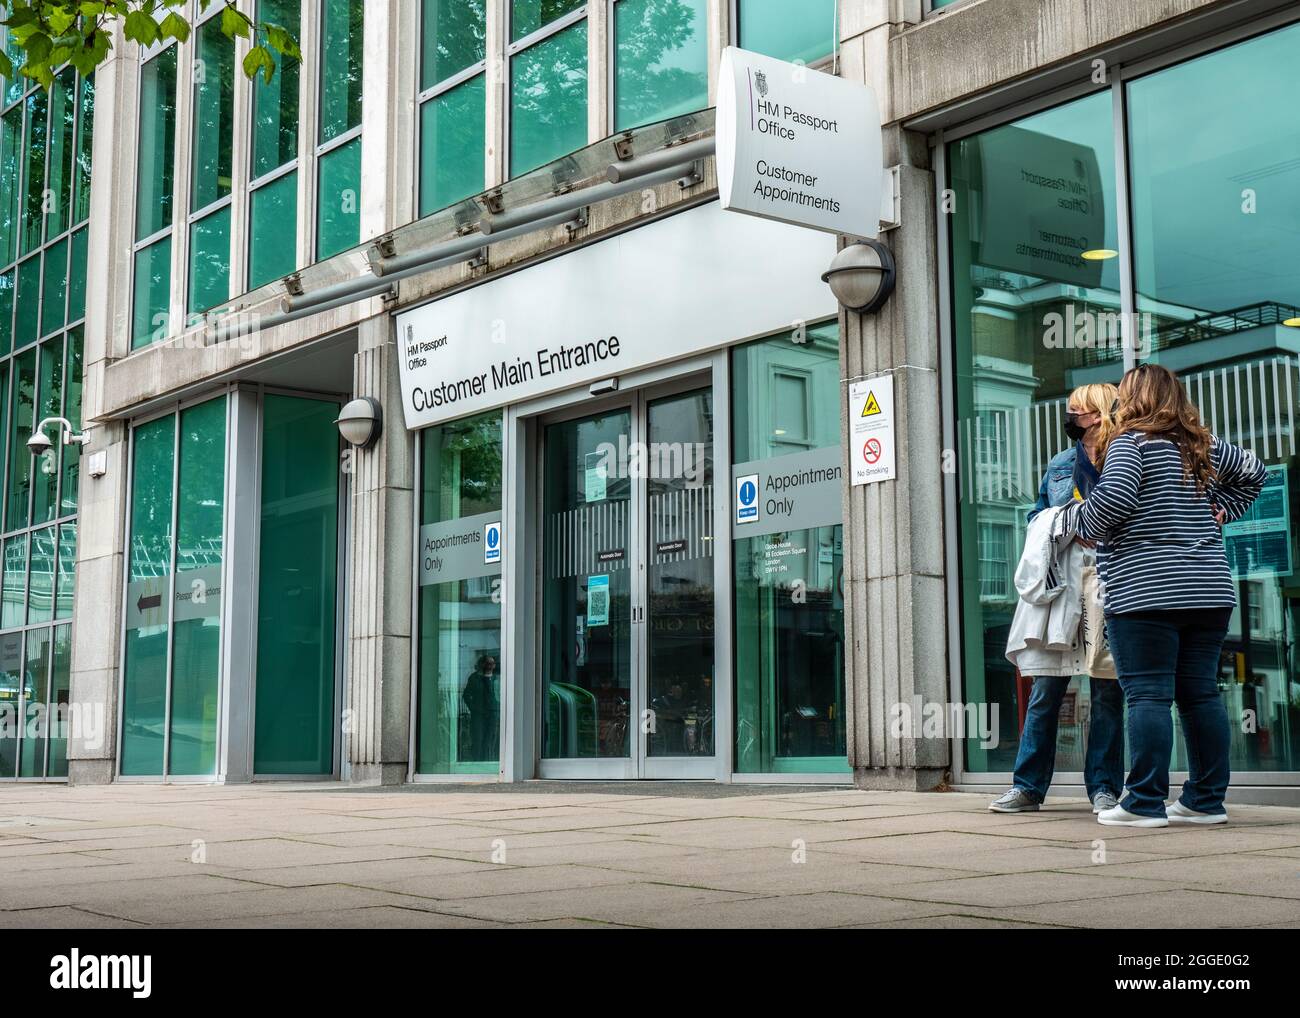 HM Passport Office, Londra, Regno Unito. L'ingresso principale del cliente all'Ufficio passaporti per cittadini britannici a Pimlico, nel sud di Londra. Foto Stock